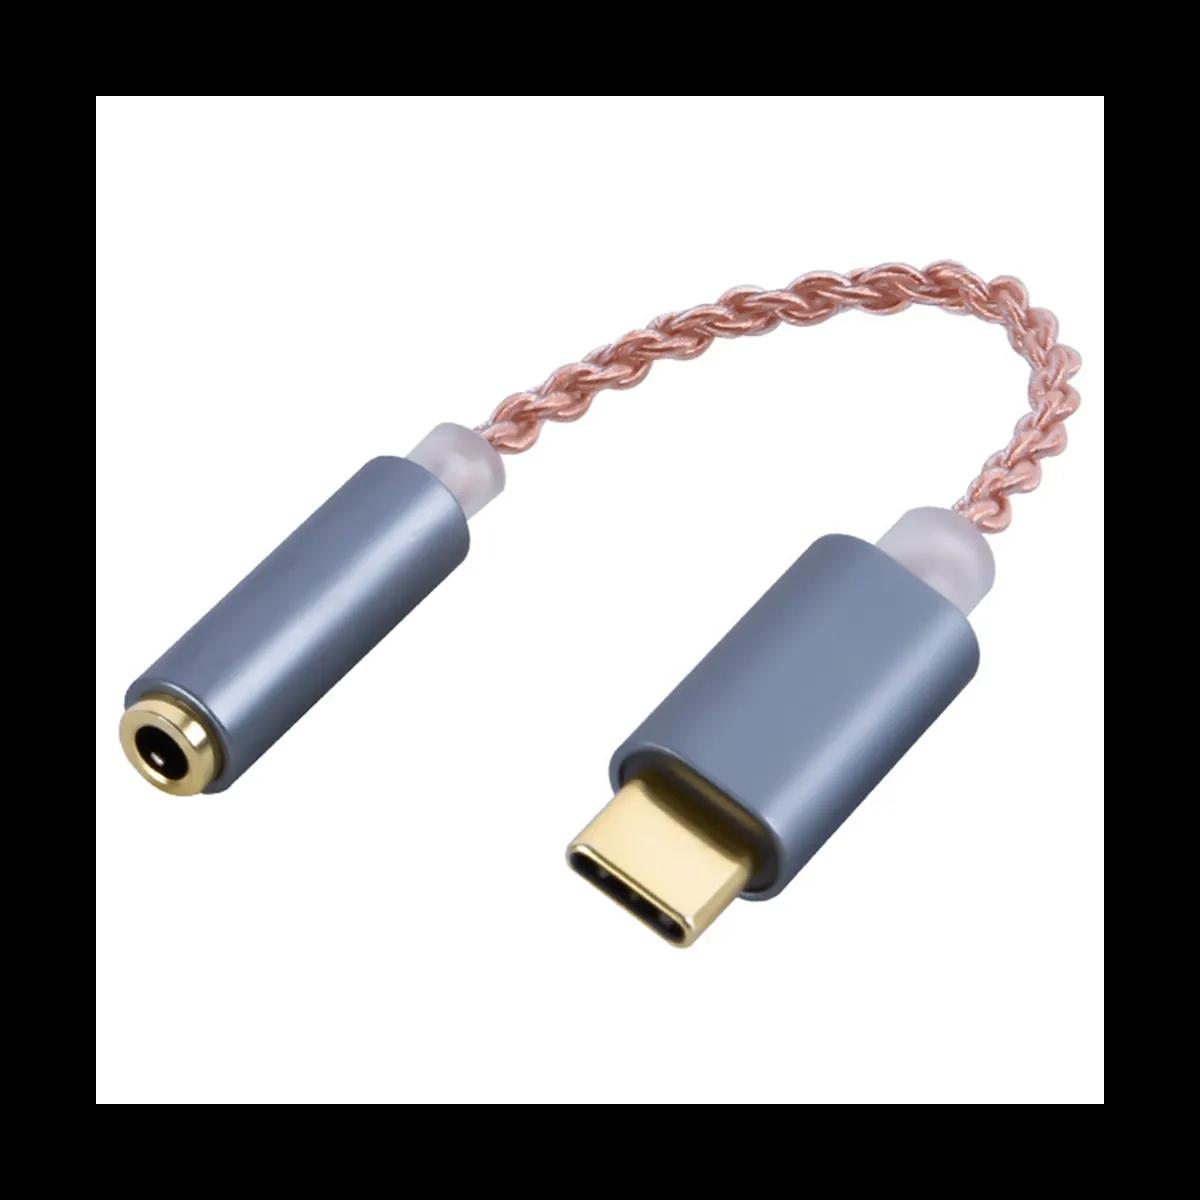 HIFI DAC 이어폰 앰프 USB C 타입 3.5mm 헤드폰 오디오 어댑터, 32 비트 384KHz 디지털 디코더 AUX 컨버터 그레이